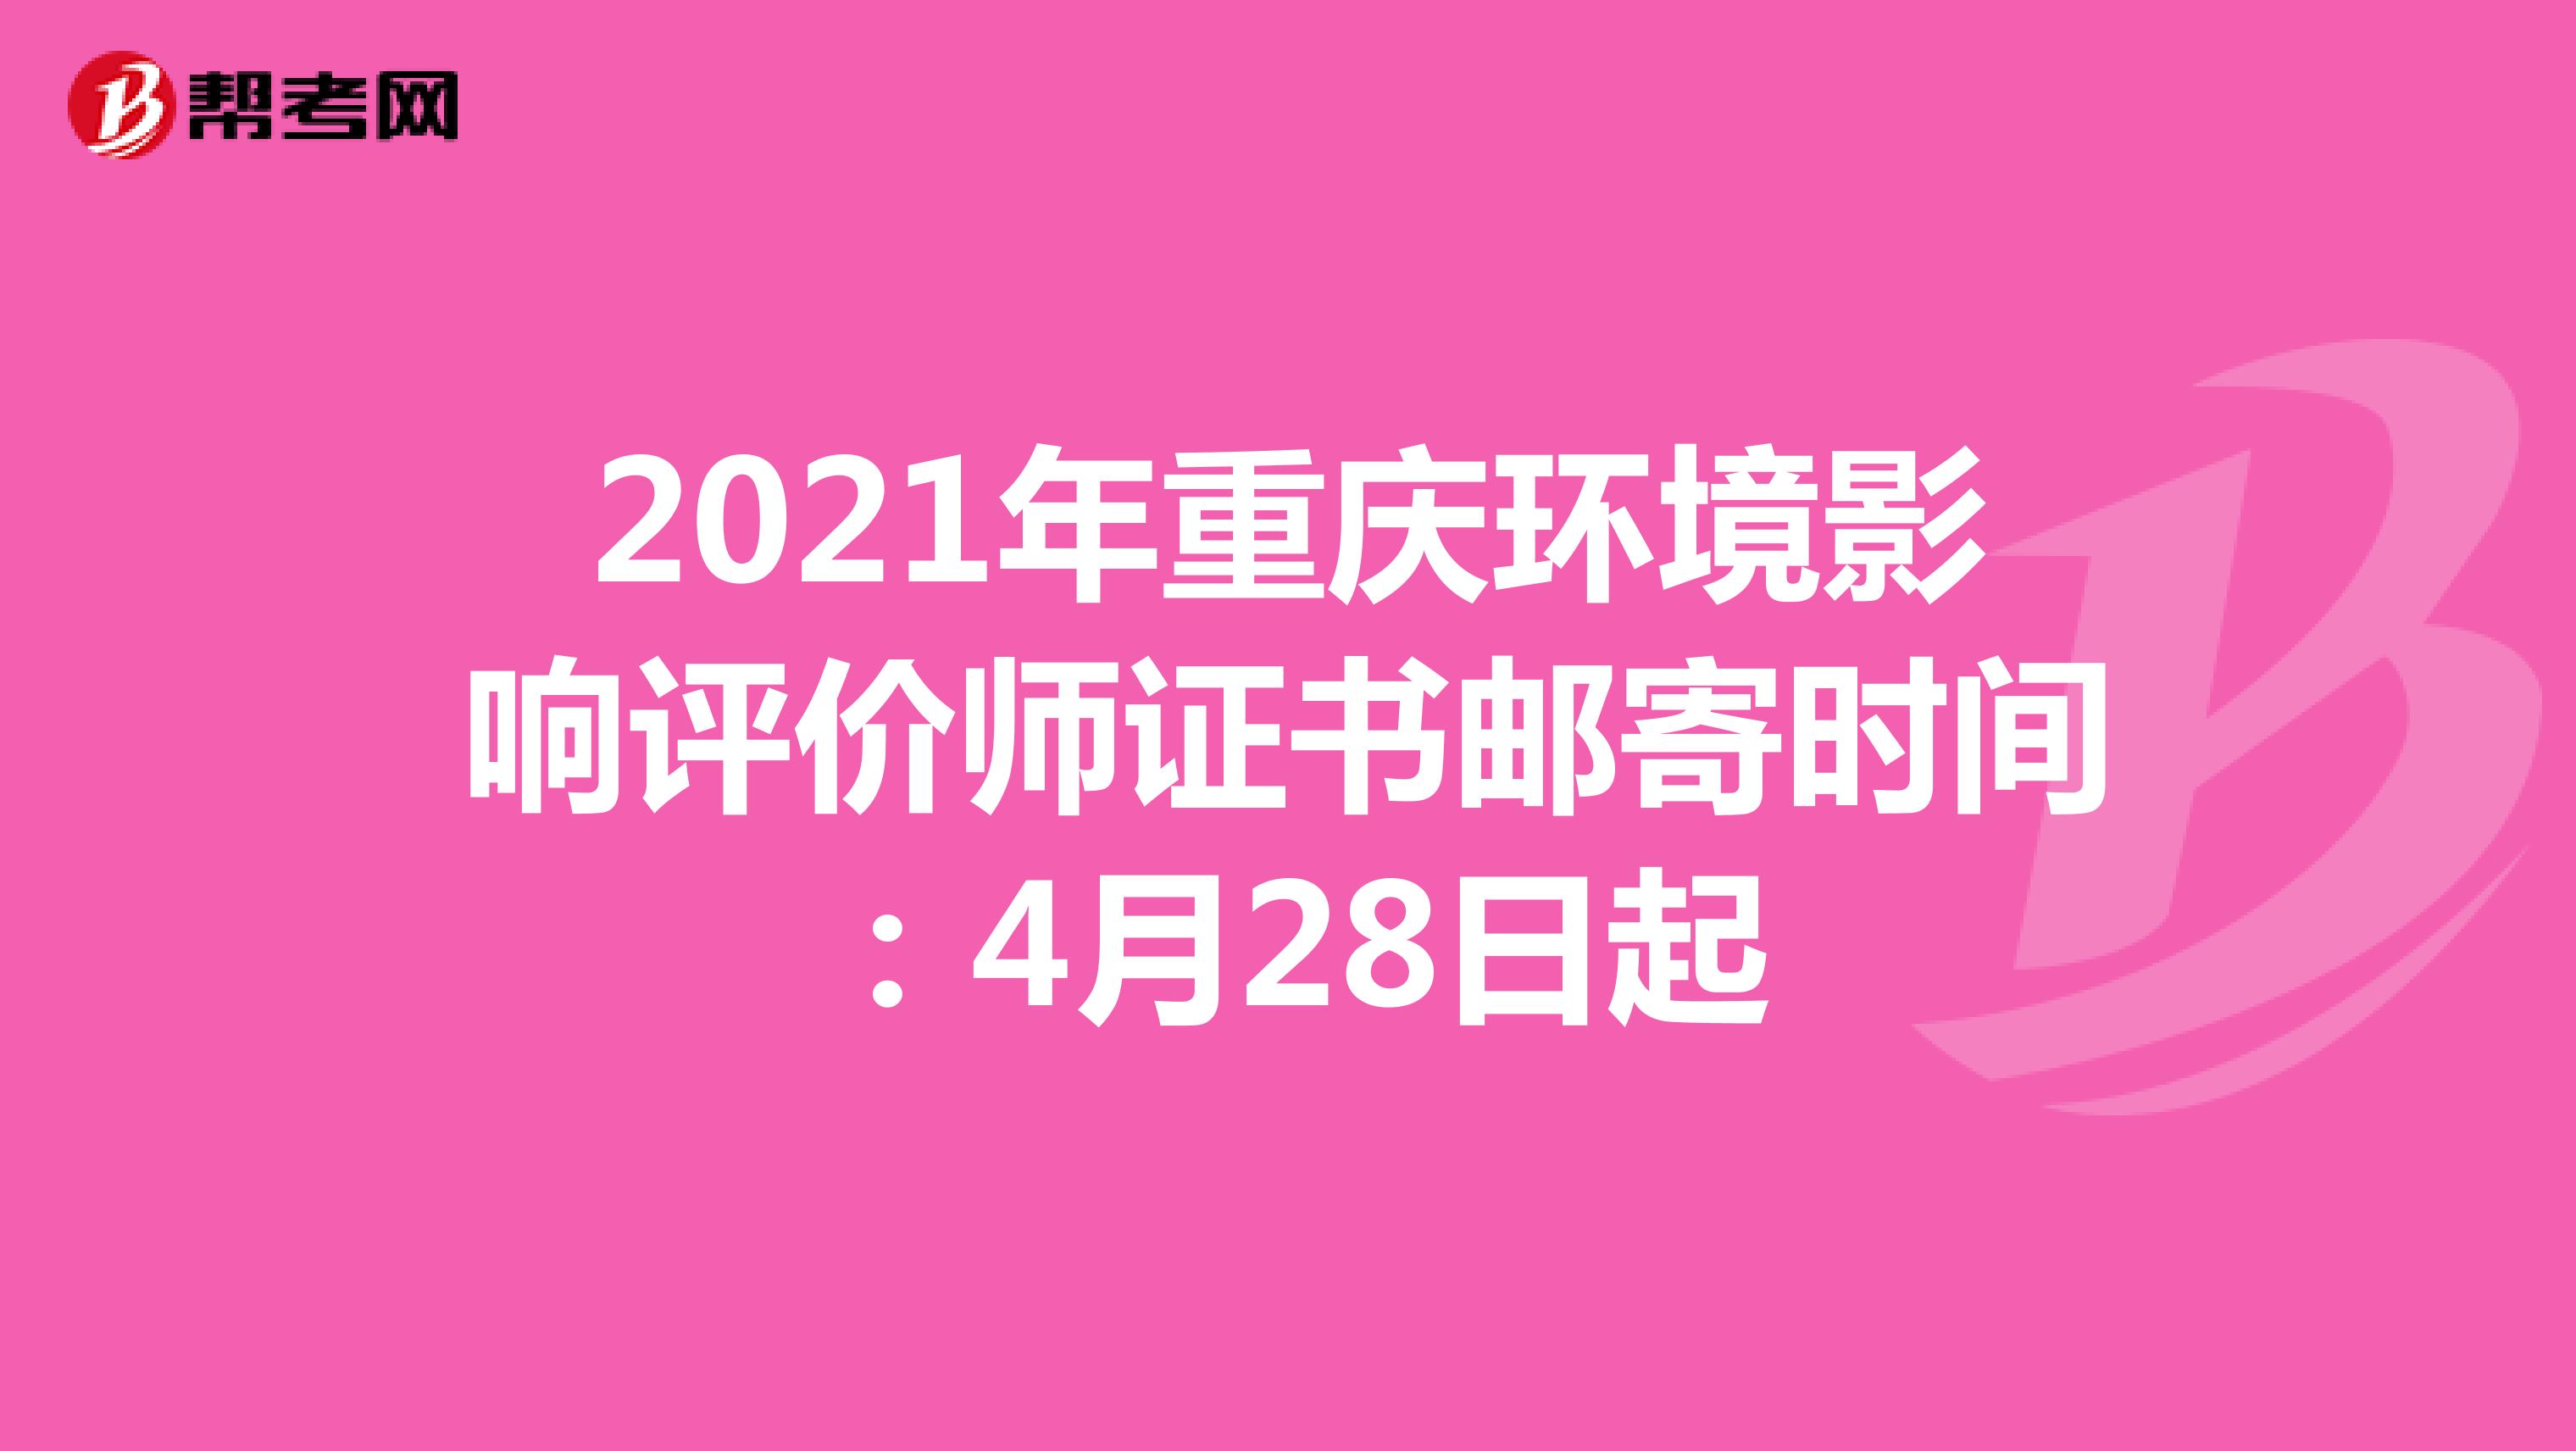 2021年重庆环境影响评价师证书邮寄时间：4月28日起